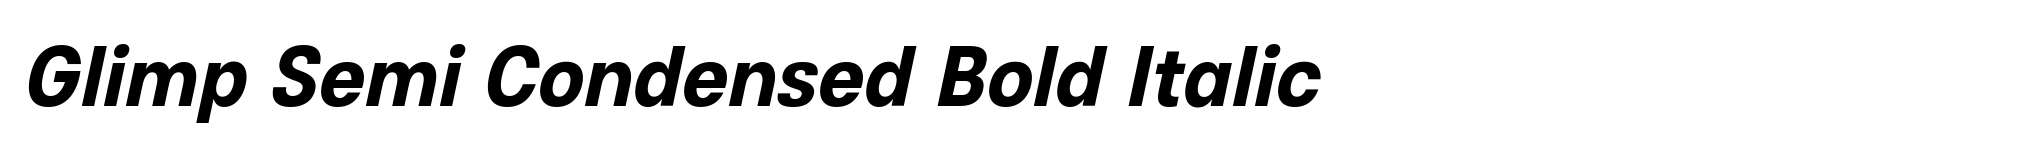 Glimp Semi Condensed Bold Italic image